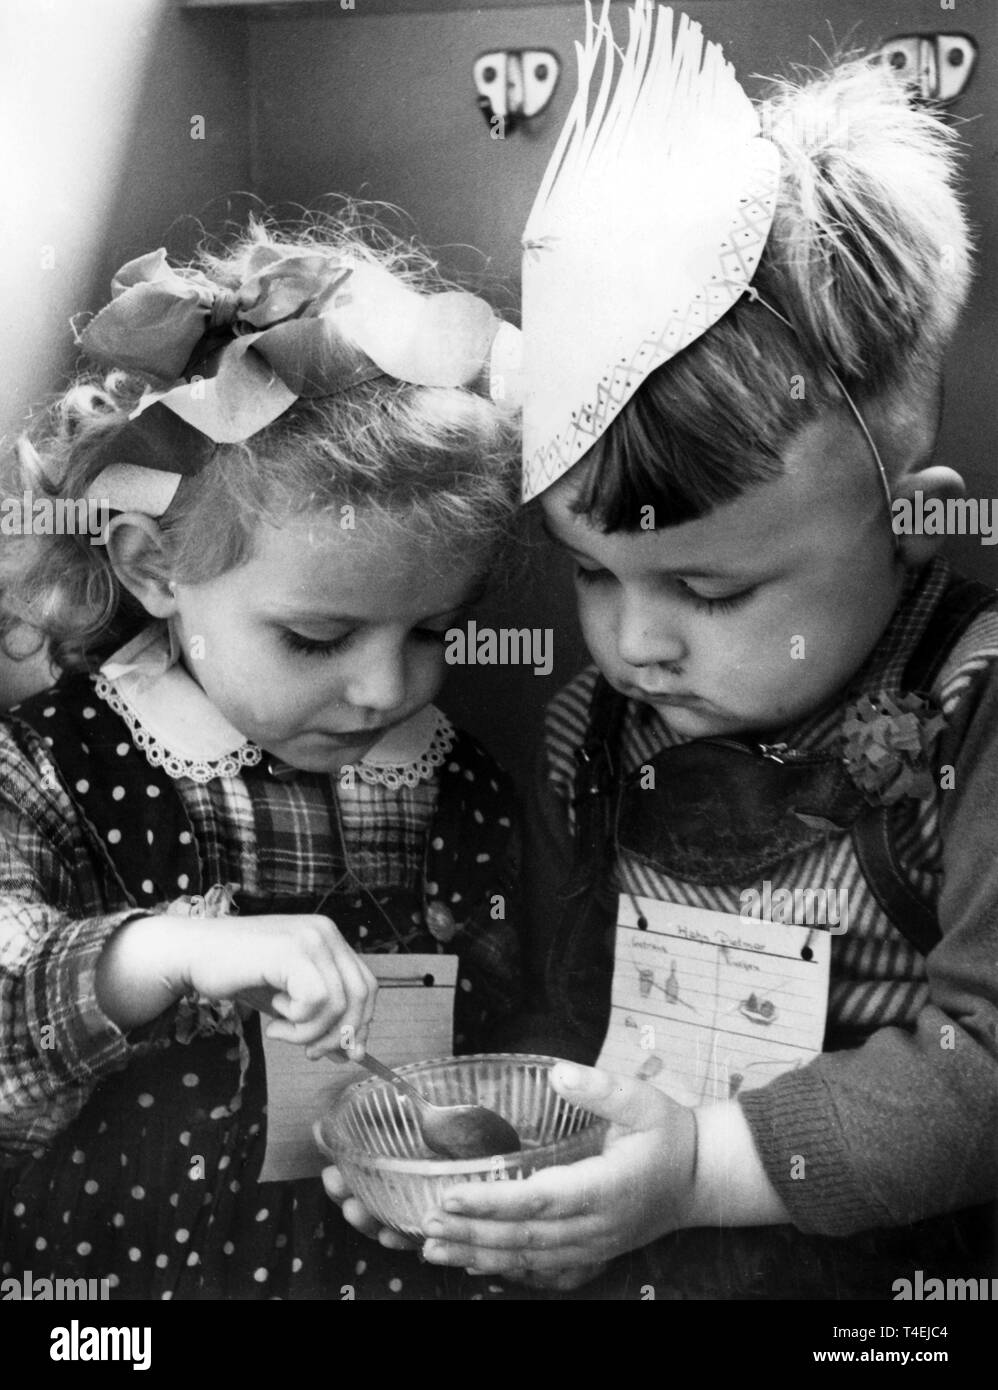 Im Kindergarten Weidenweg im Berliner Stadtbezirk Friedrichshain essen zwei Kinder gemeinsam ein Schüsselchen Eis. Ganz der Kavalier, hält der Junge das Schüsselchen für seine kleine Freundin. (Aufnahme vom 01.06.1960) | Verwendung weltweit Stockfoto